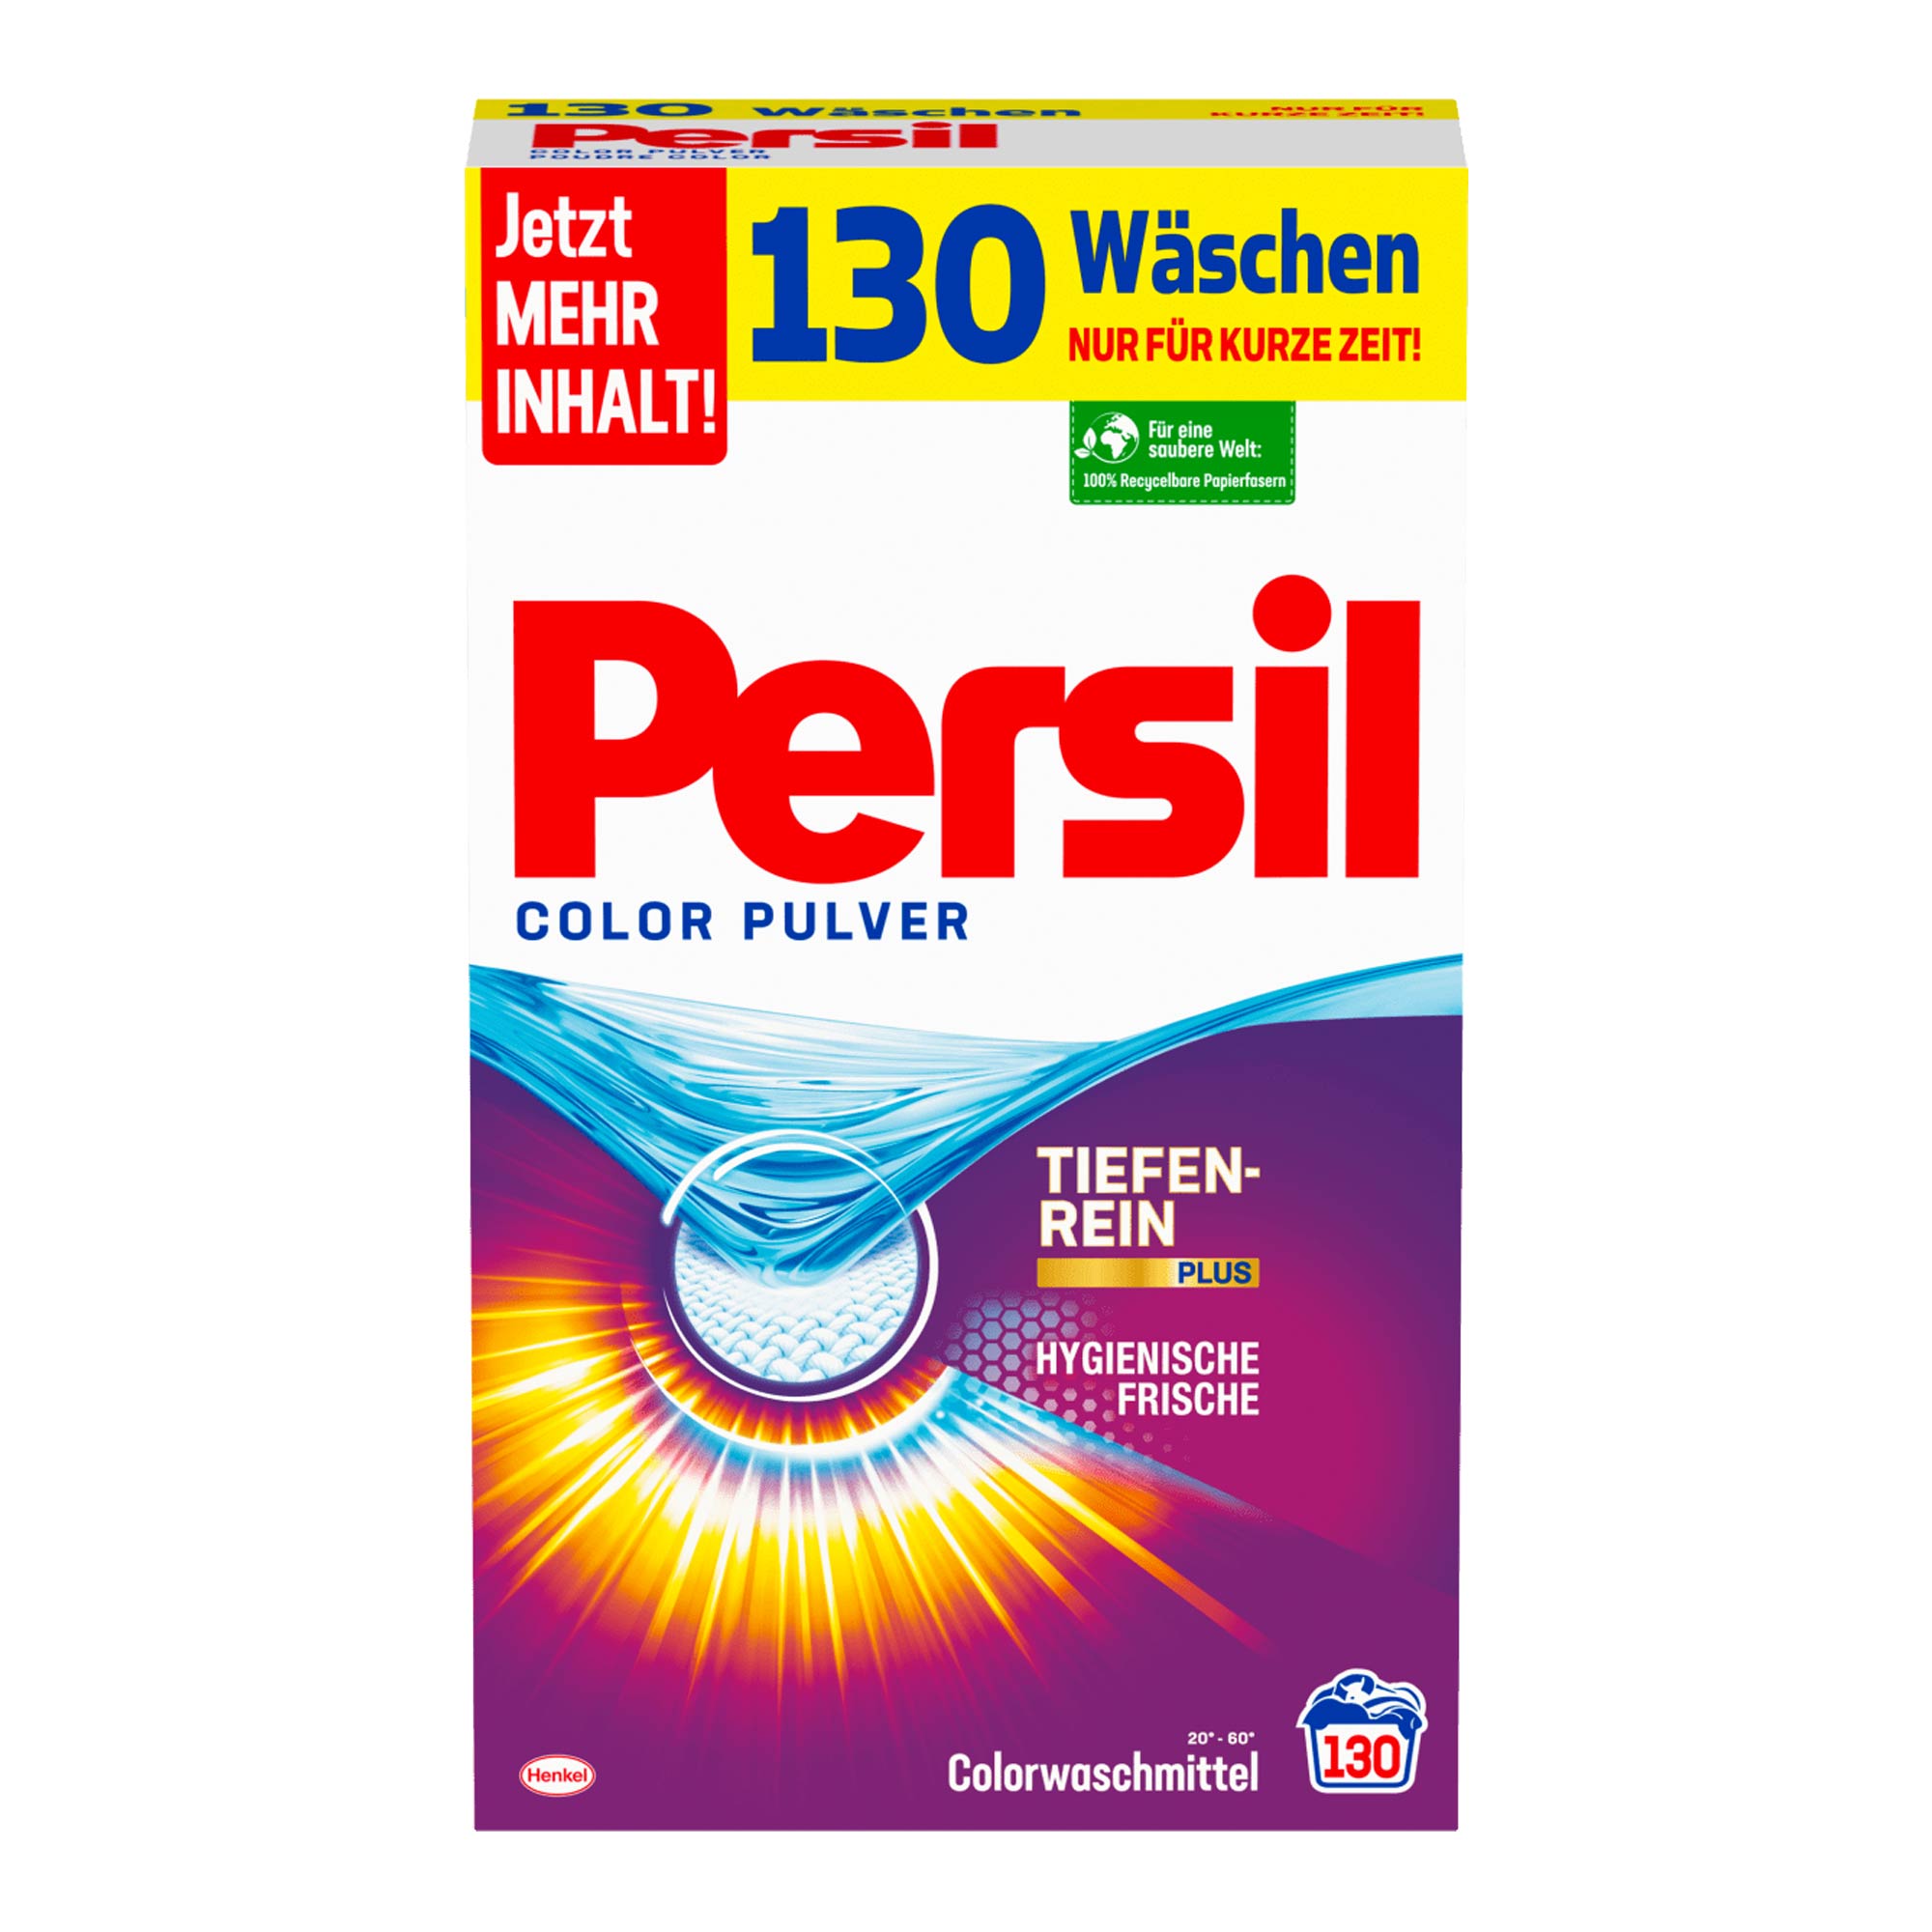 Persil Color Pulver Colorwaschmittel, 130 Wl